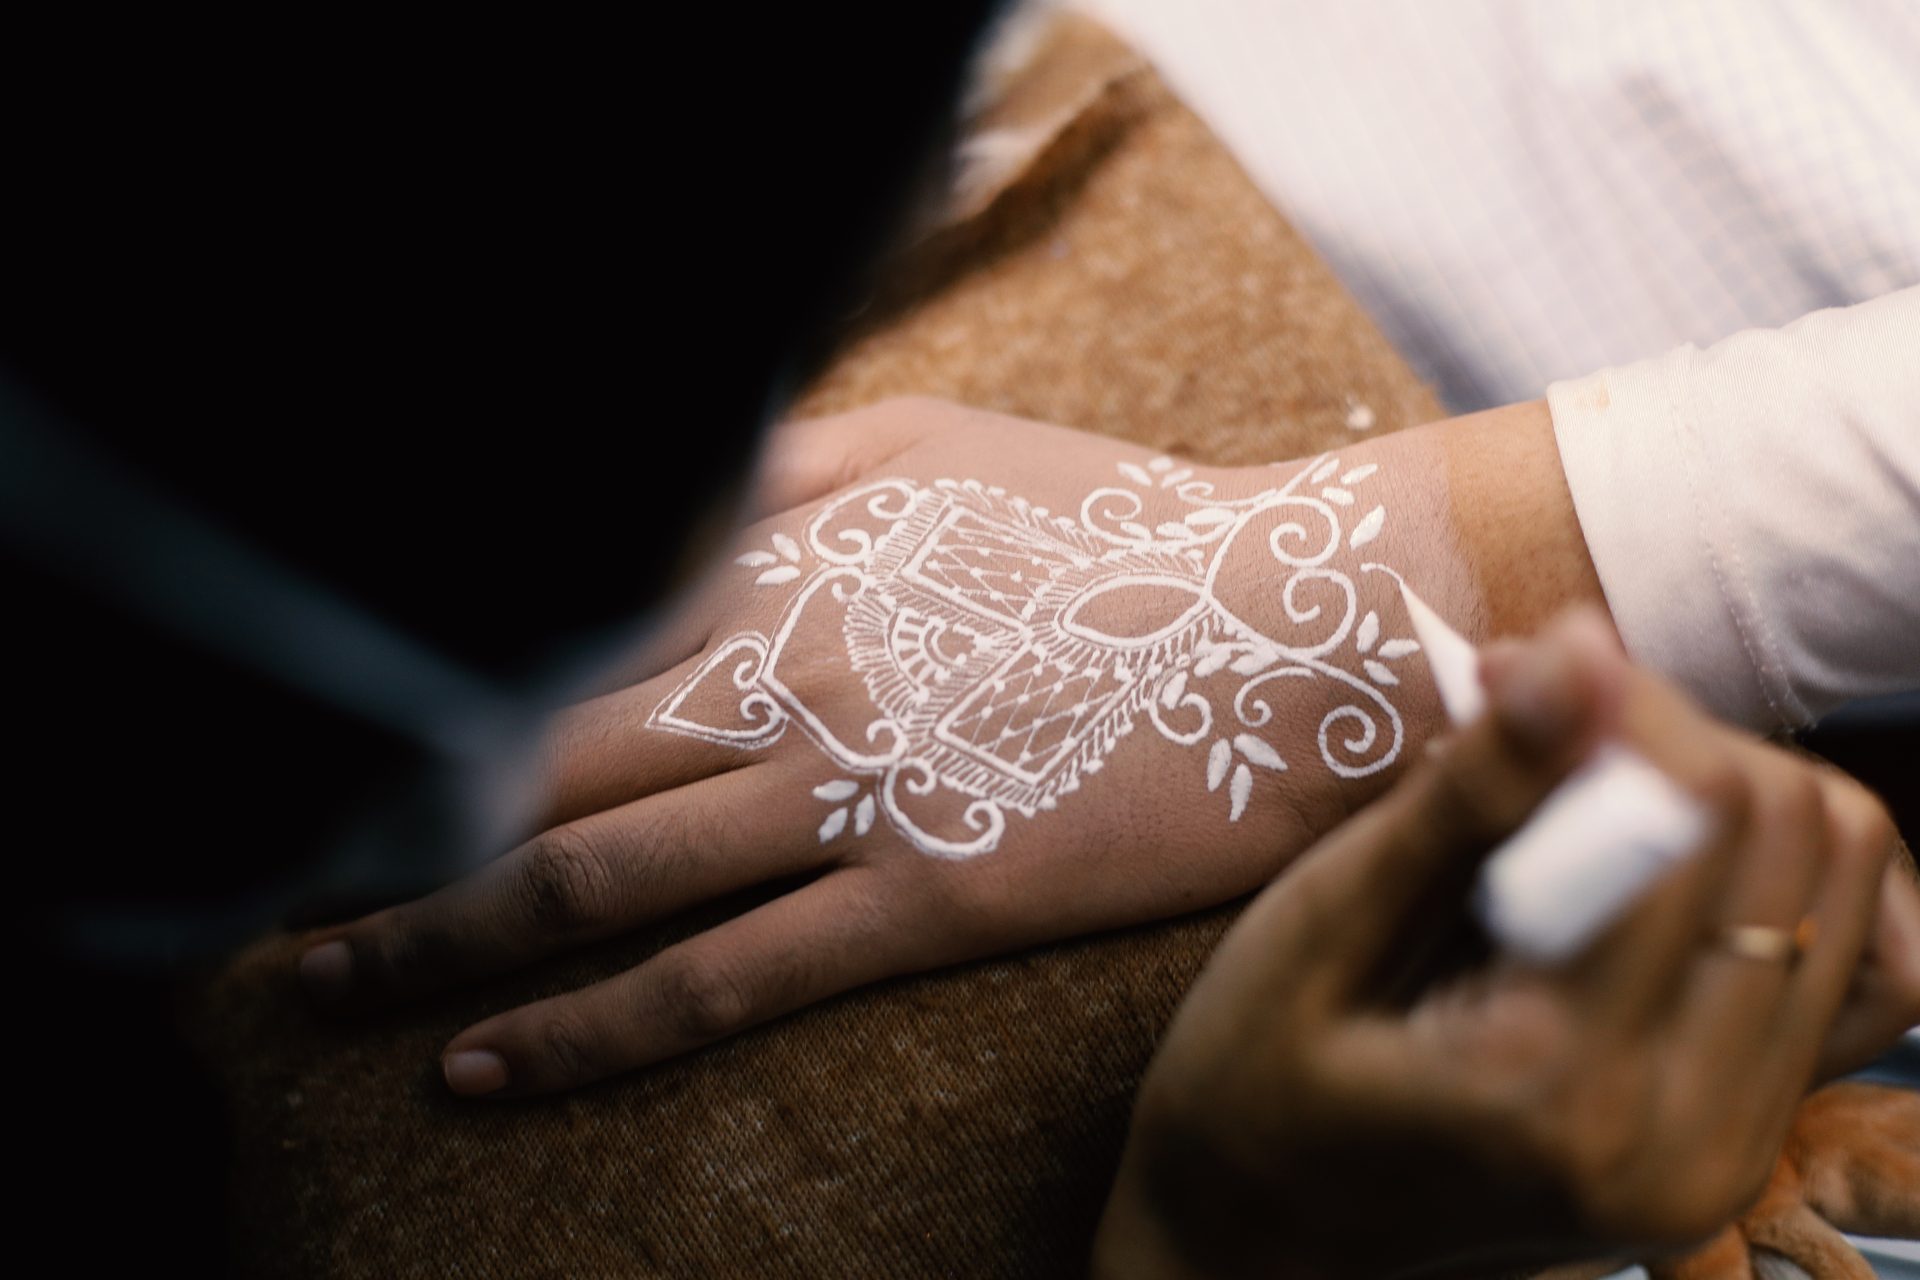 Na tym obrazku możemy zobaczyć proces tworzenia białego tatuażu na dłoni. Wprawne ręce tatuażysty delikatnie nanoszą biały tusz na skórę, tworząc precyzyjne linie i wzory. Cały proces jest pełen precyzji i skupienia, co podkreśla profesjonalizm i artystyczną wrażliwość wykonawcy